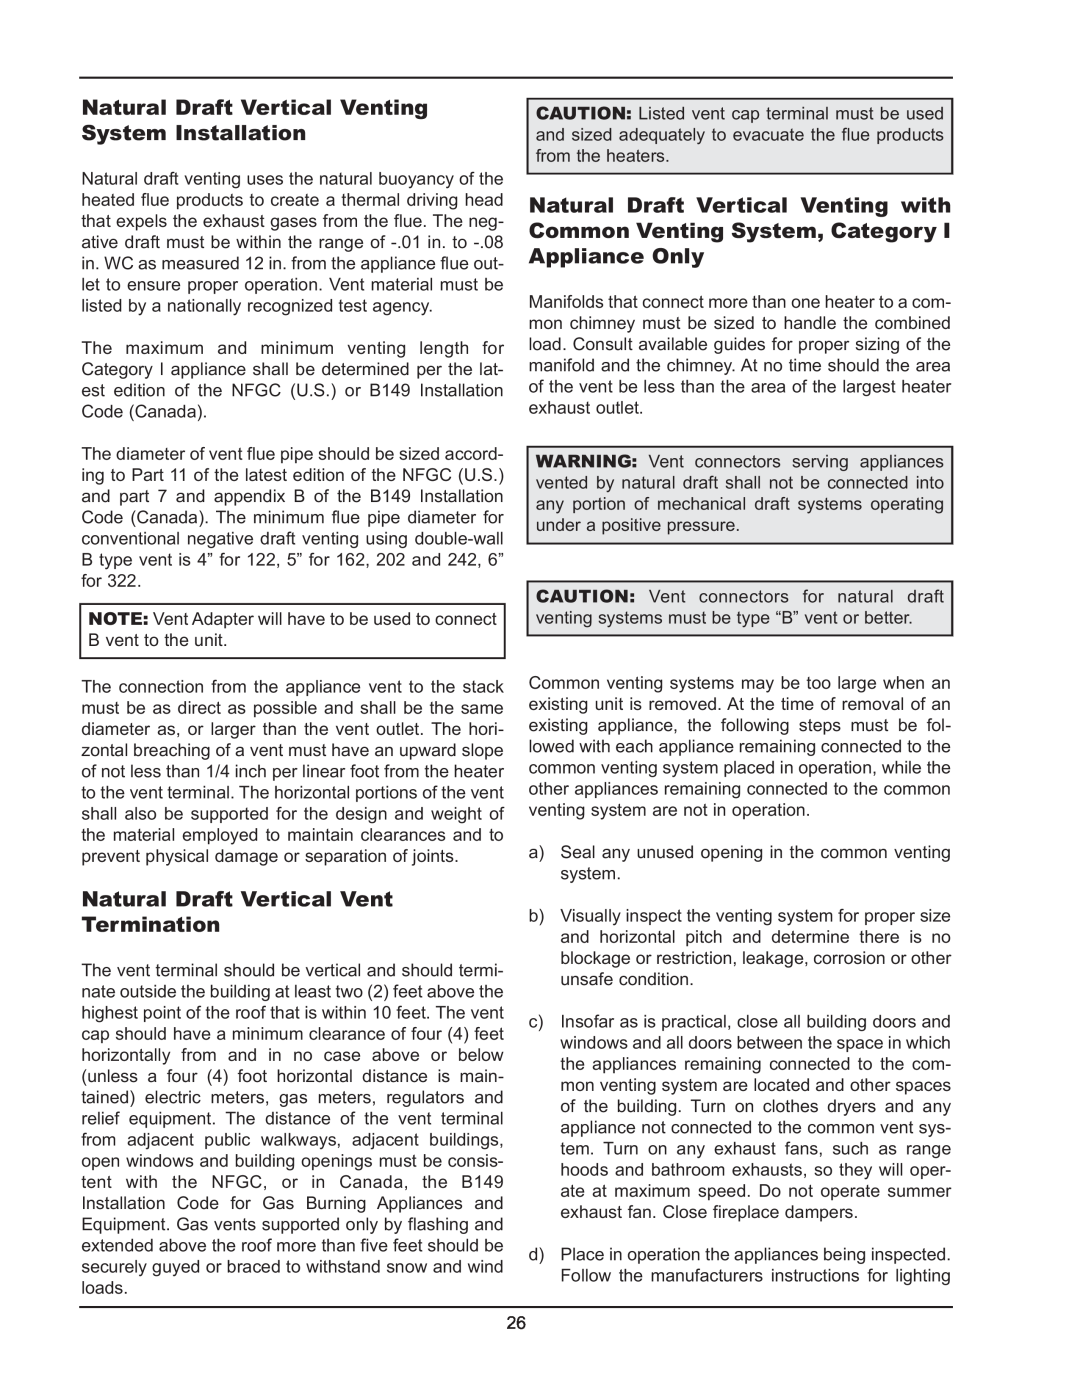 Raypak 122-322 manual Natural Draft Vertical Vent Termination 